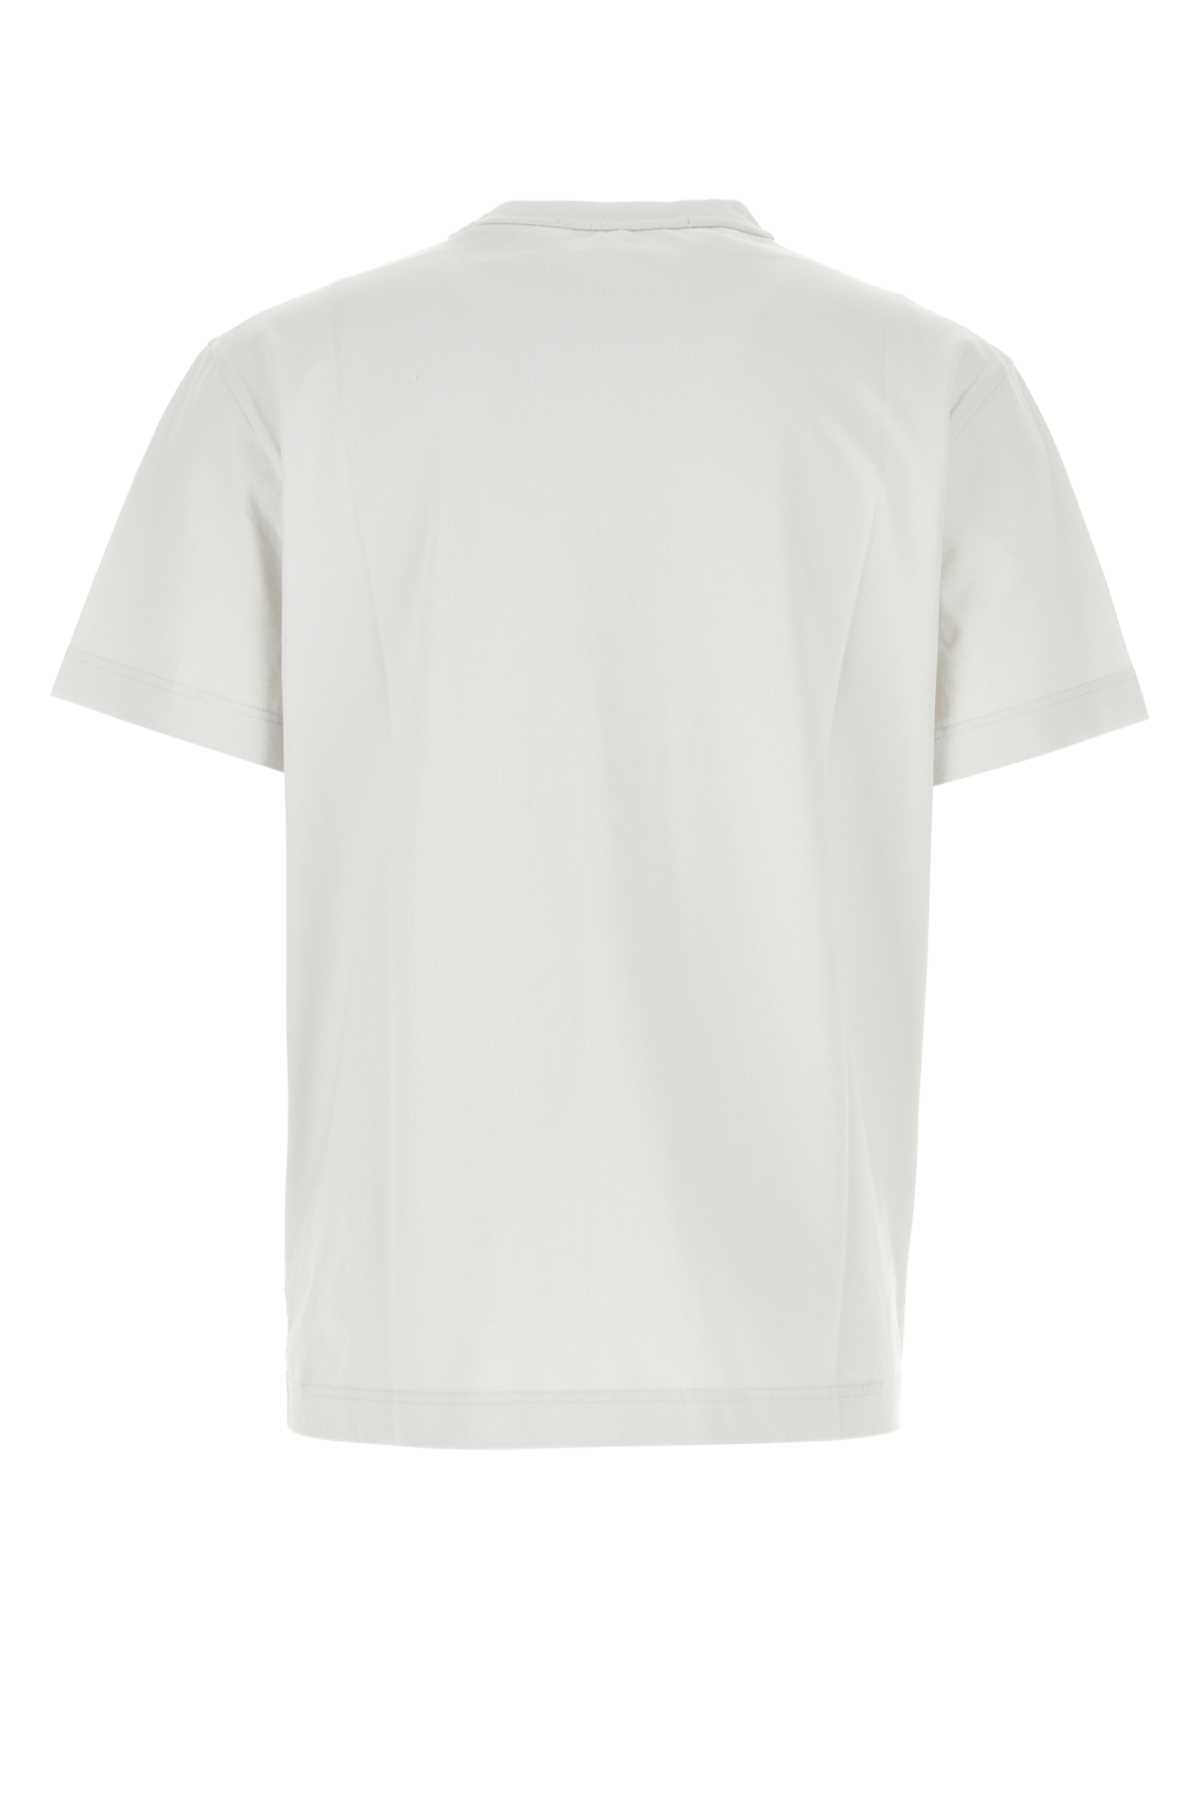 Alexander Wang White Cotton T-shirt In Gunsmoke